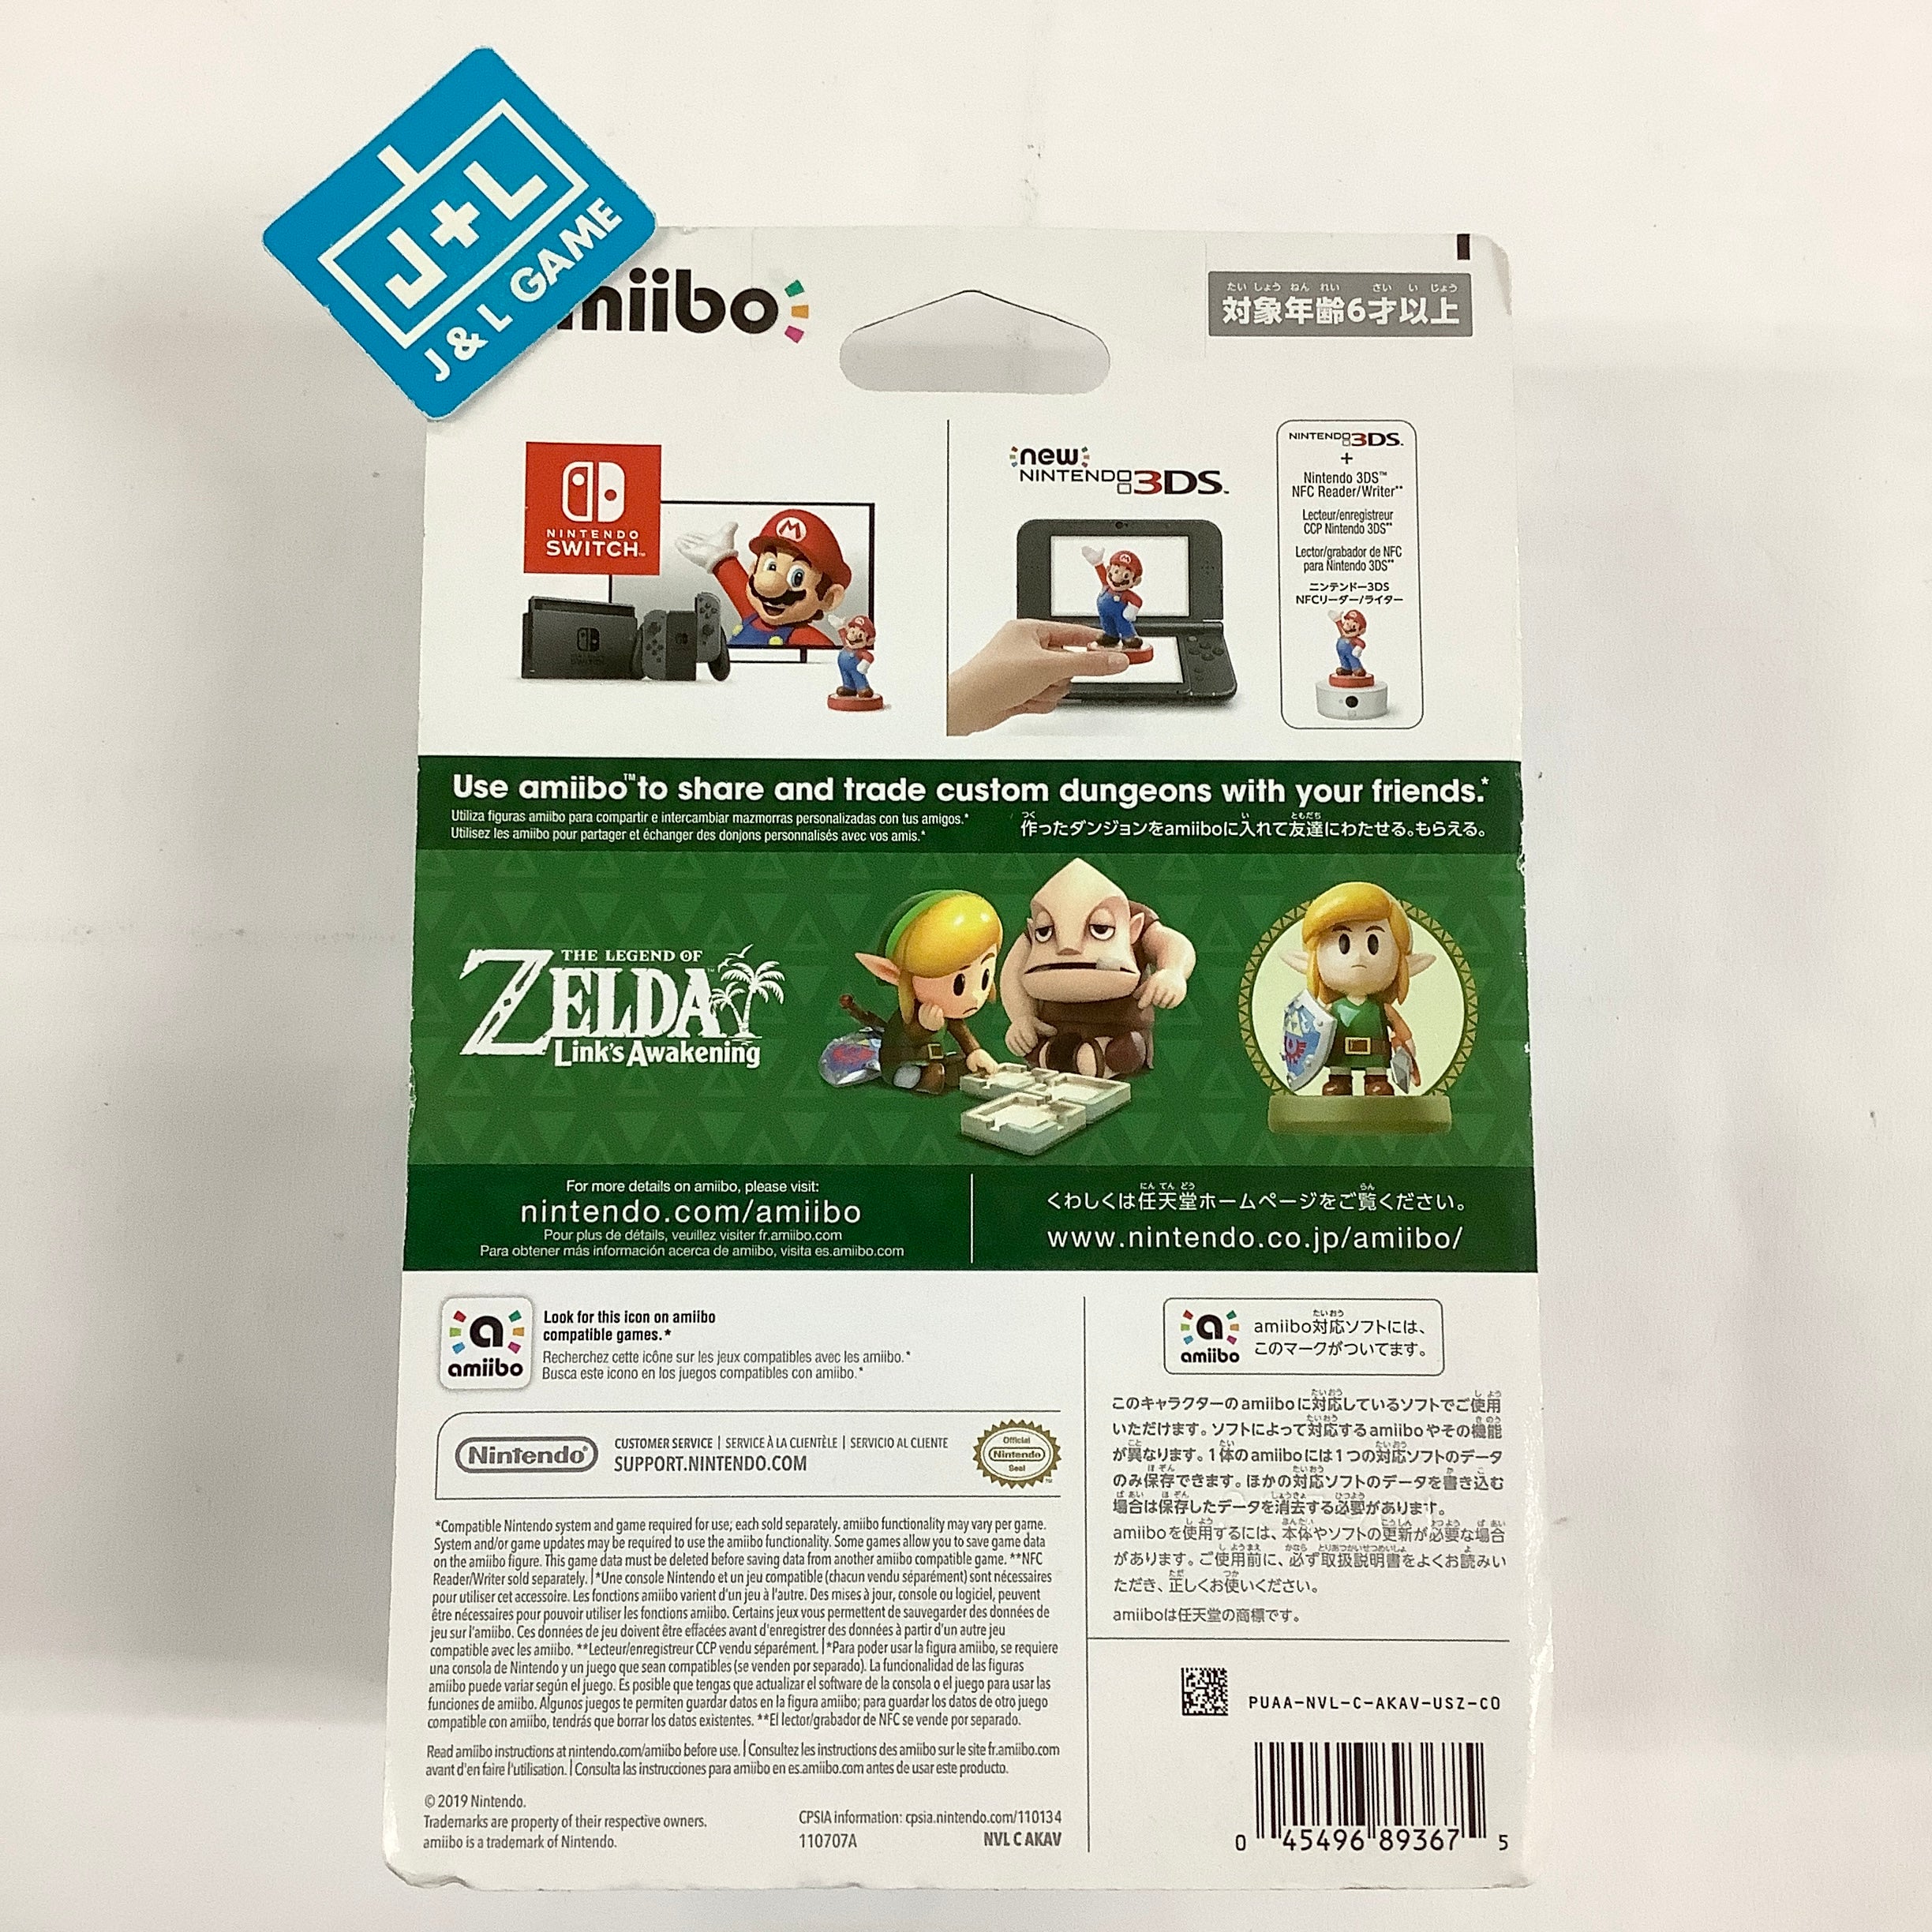 Link (The Legend of Zelda: Link's Awakening) - Nintendo Switch Amiibo Video Games Nintendo   